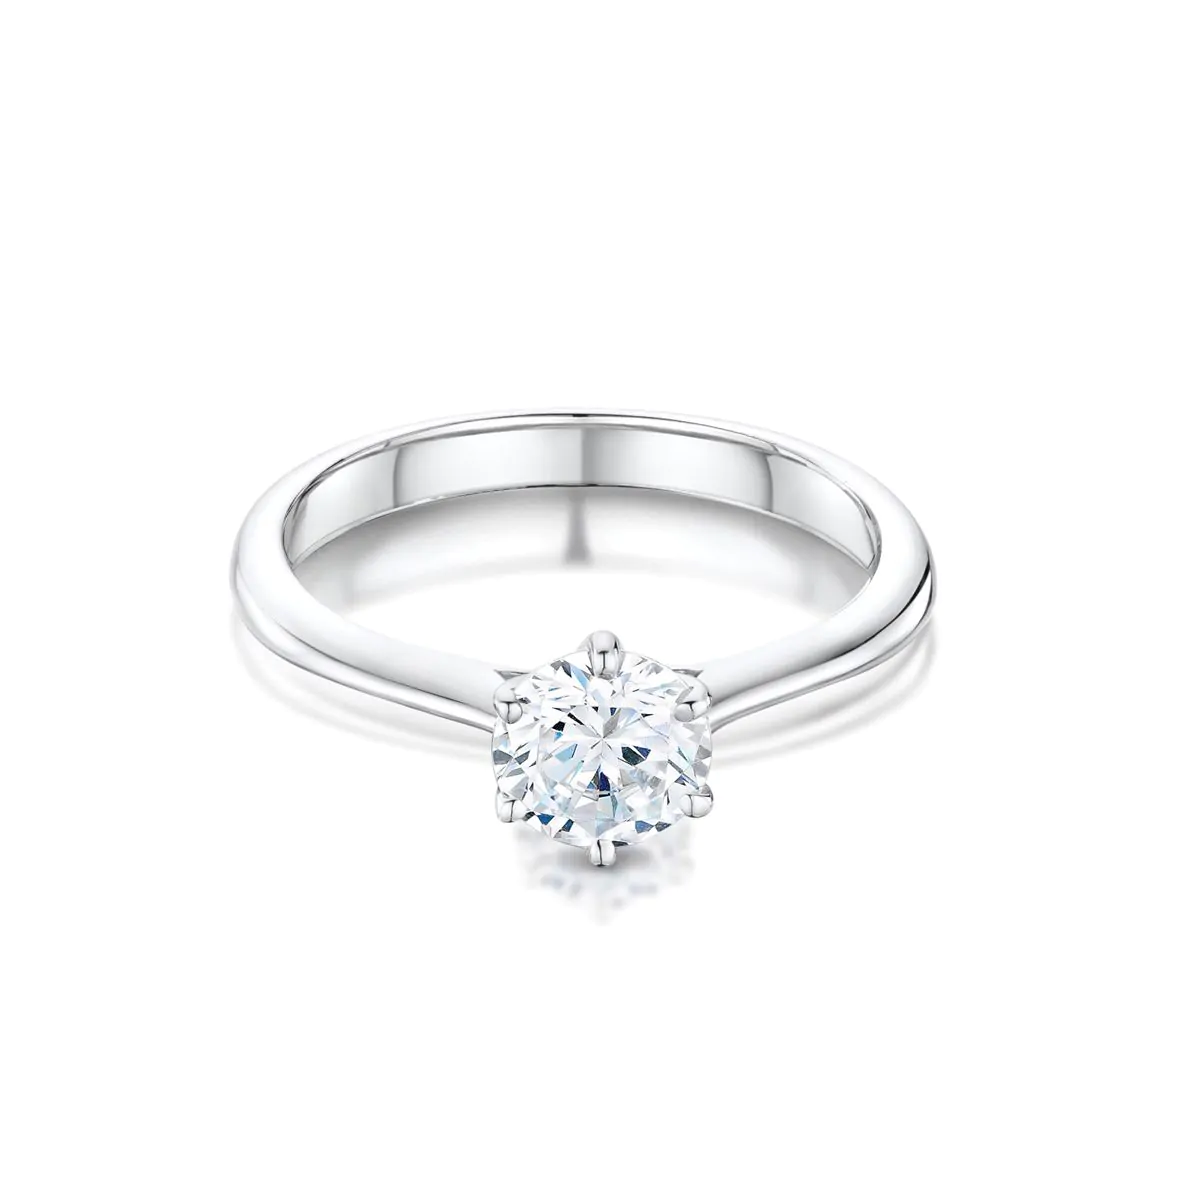 Suzanne 18ct White Gold 0.50ct E SI1 Brilliant Cut Diamond Ring